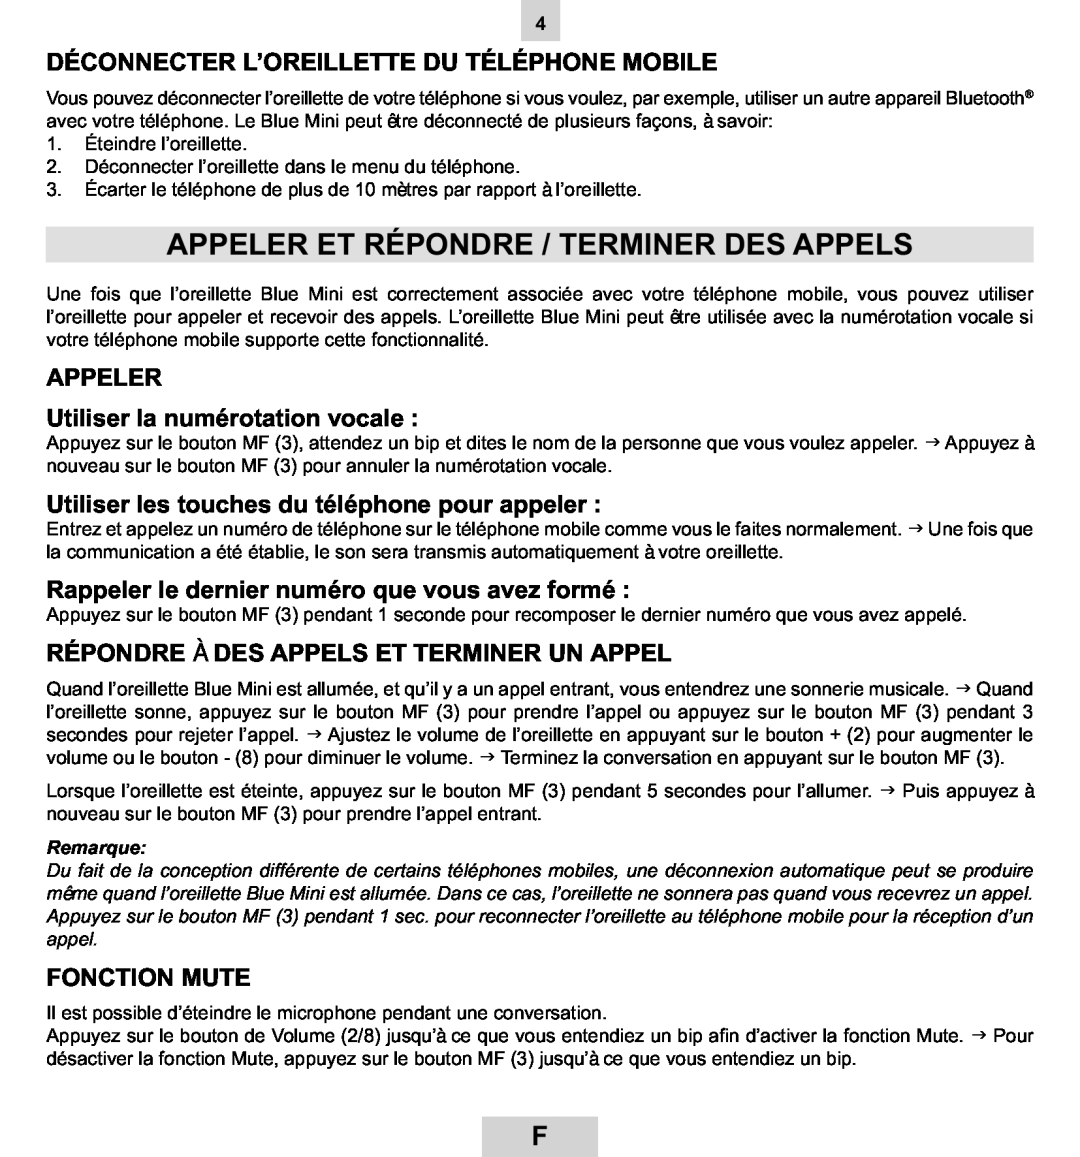 Mr Handsfree BLUE MINI manual Appeler Et Répondre / Terminer Des Appels, Déconnecter L’Oreillette Du Téléphone Mobile 